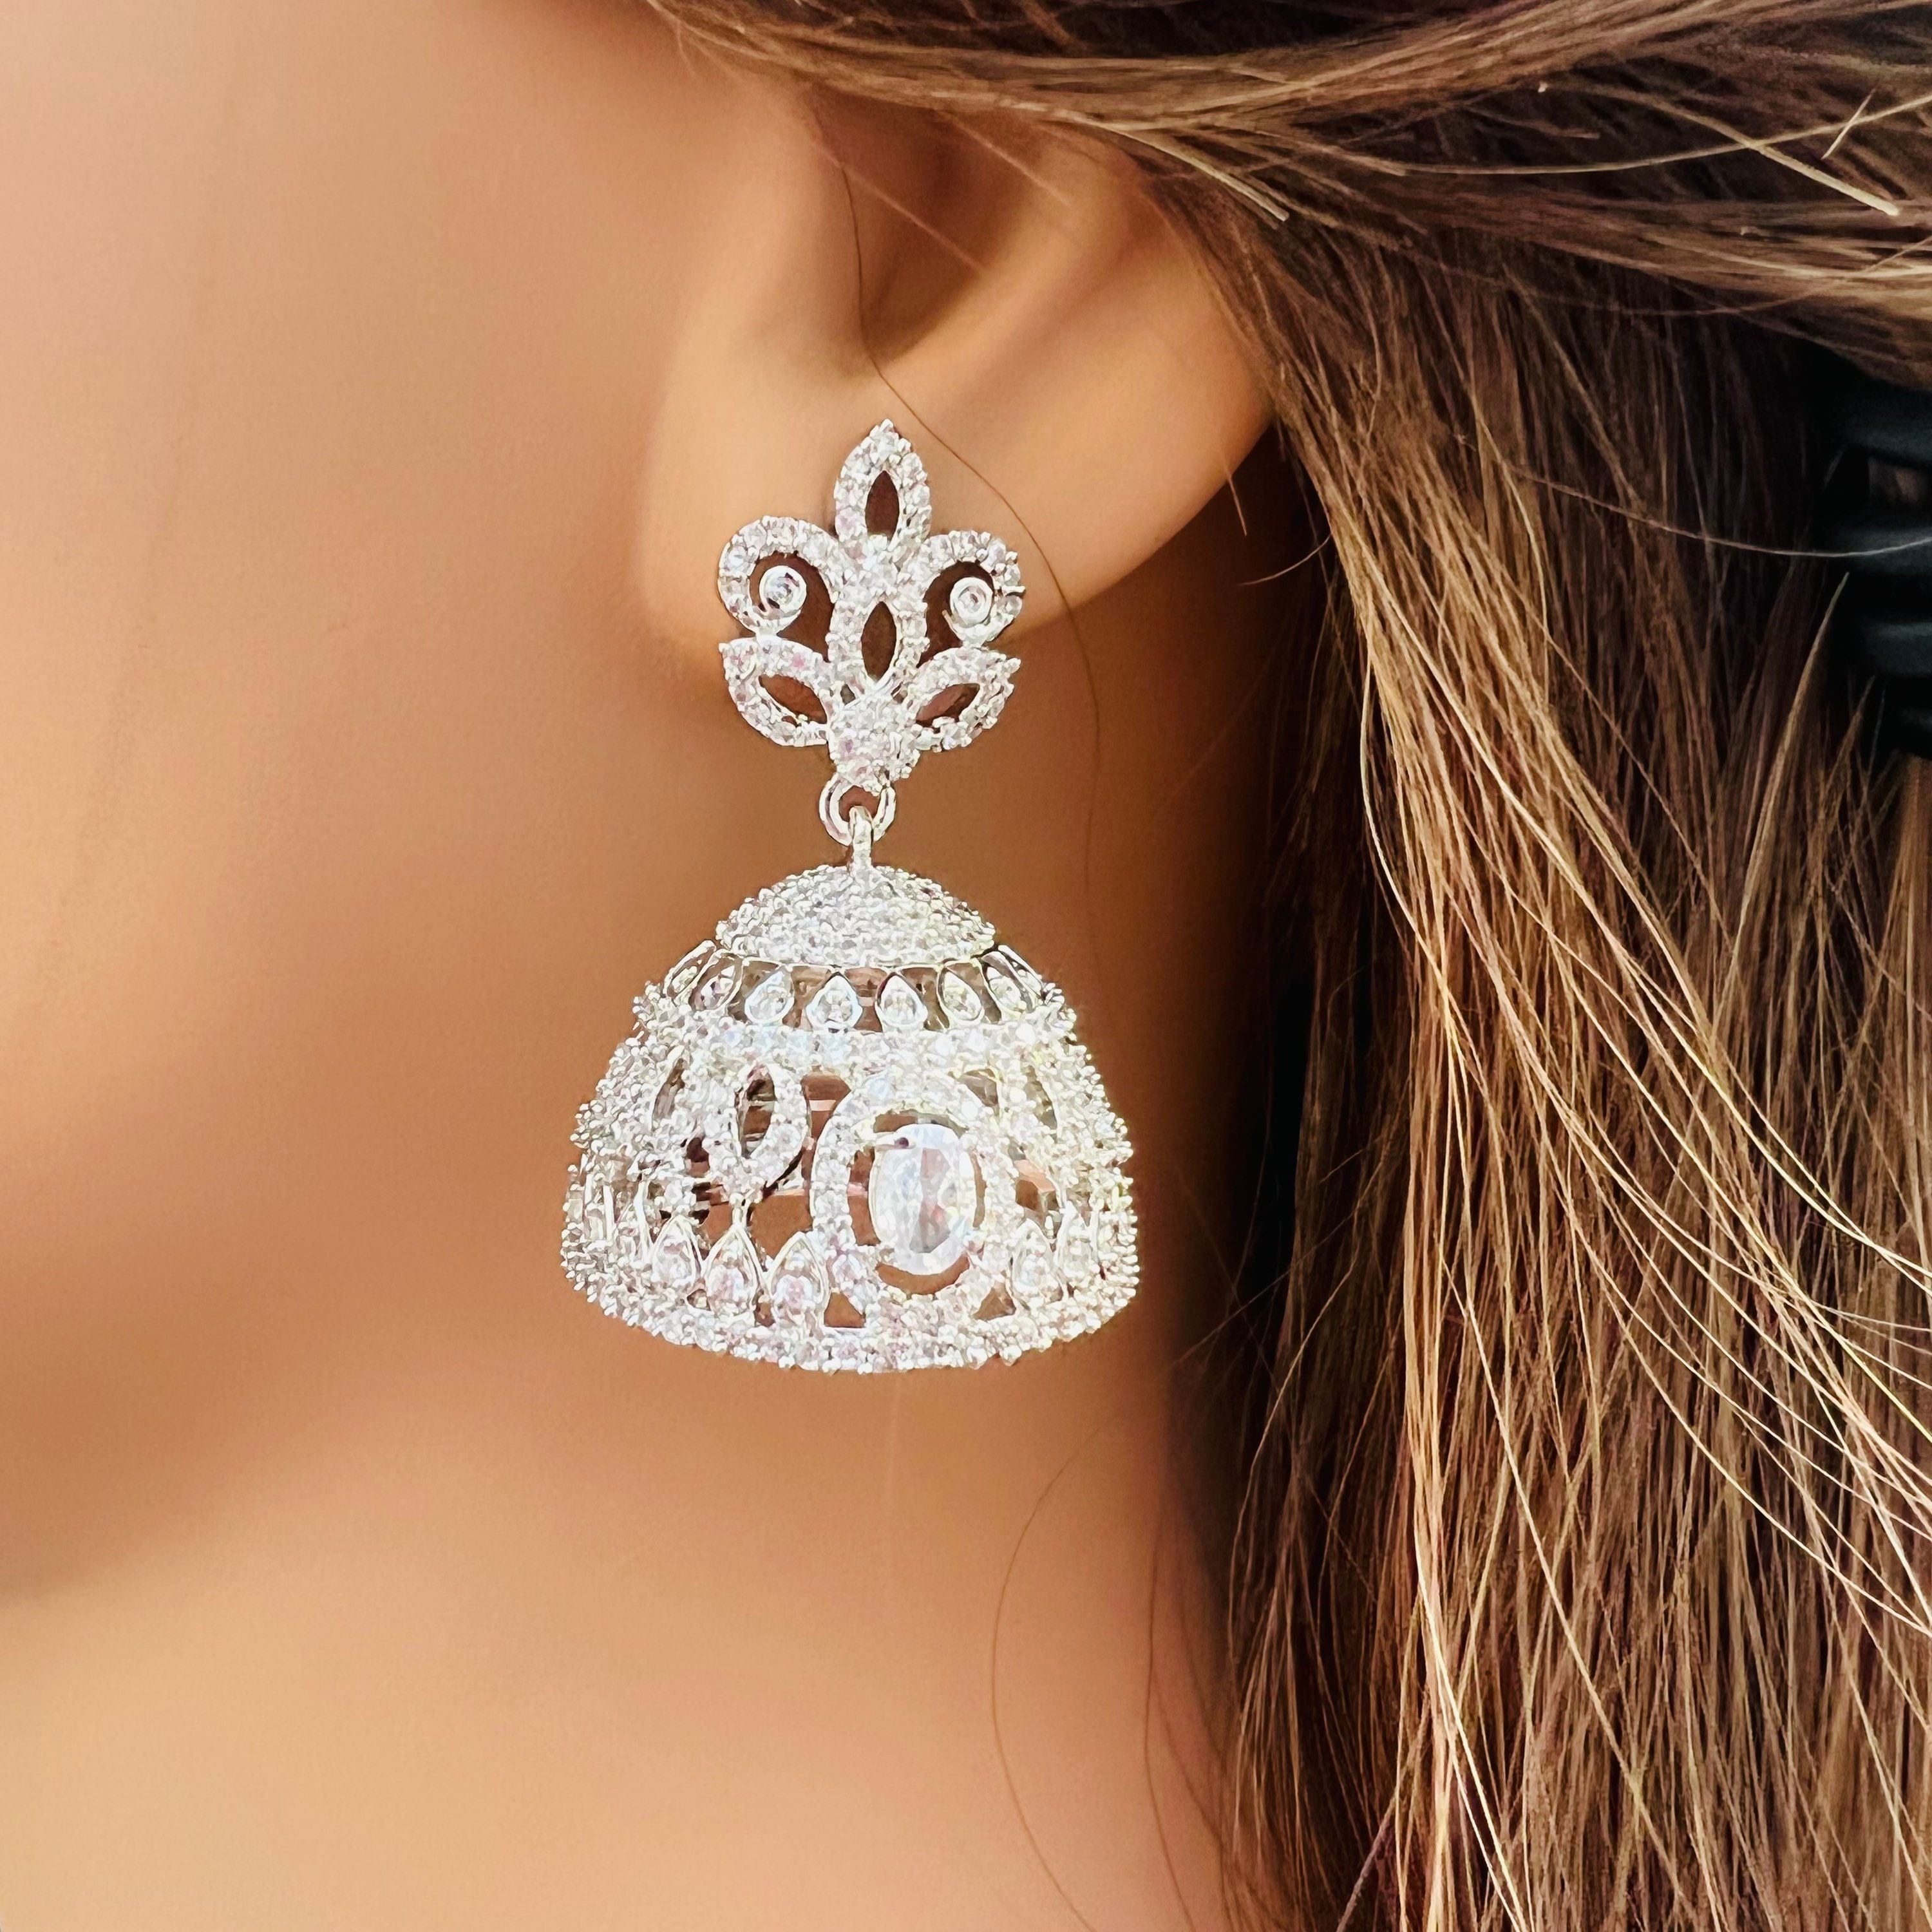 Buy Big Jhumka Earrings Online In India - Etsy India